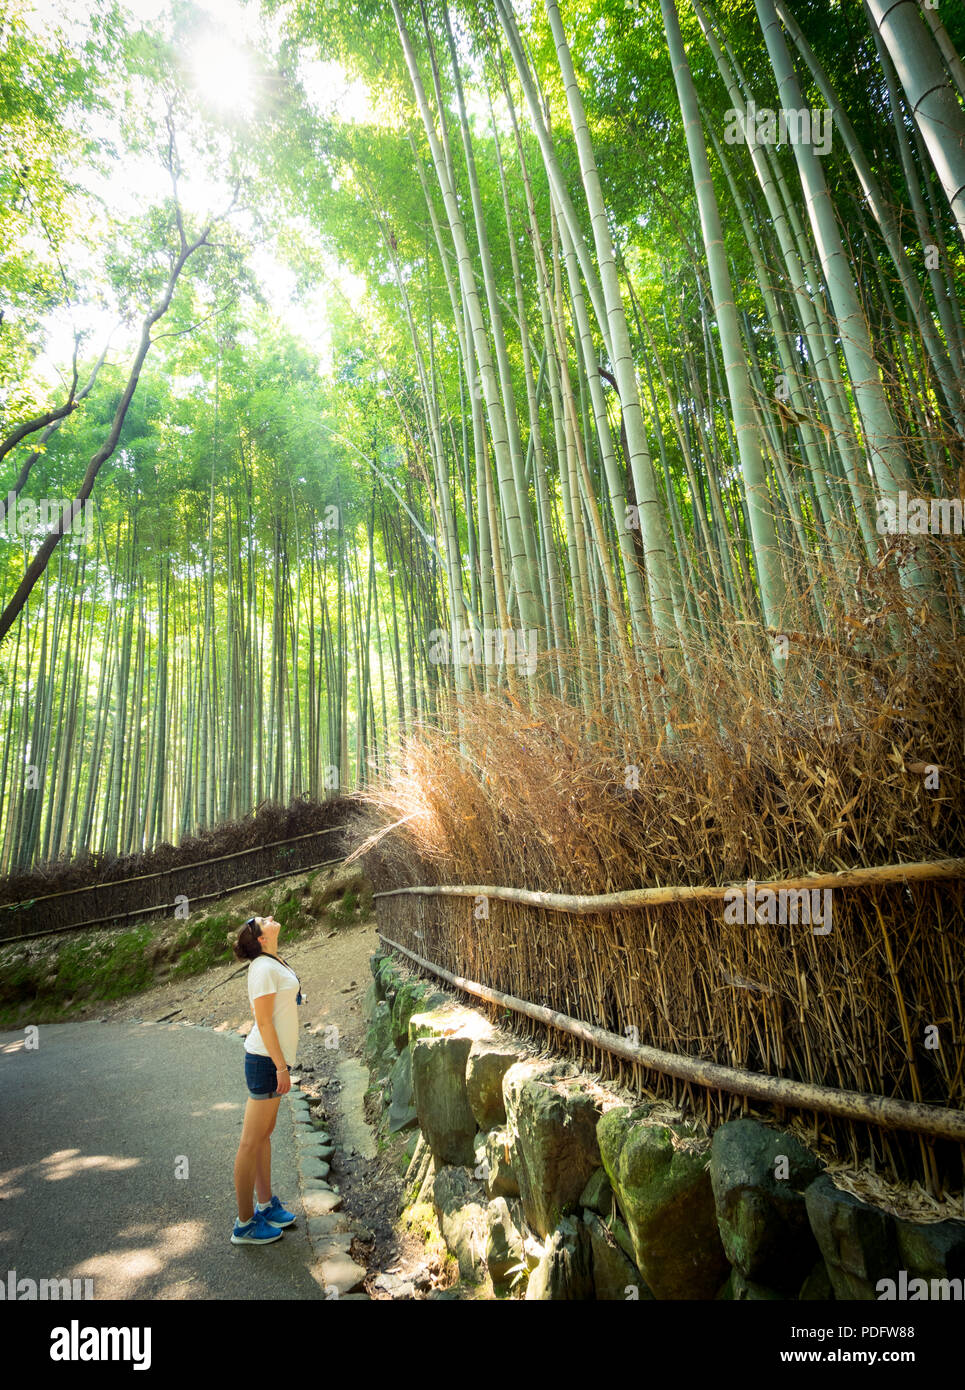 Une fille regarde l'impressionnante canopée de la forêt de bambous d'Arashiyama Sagano (Bambouseraie), une attraction populaire dans la région de Arashiyama, Kyoto, Japon. Banque D'Images